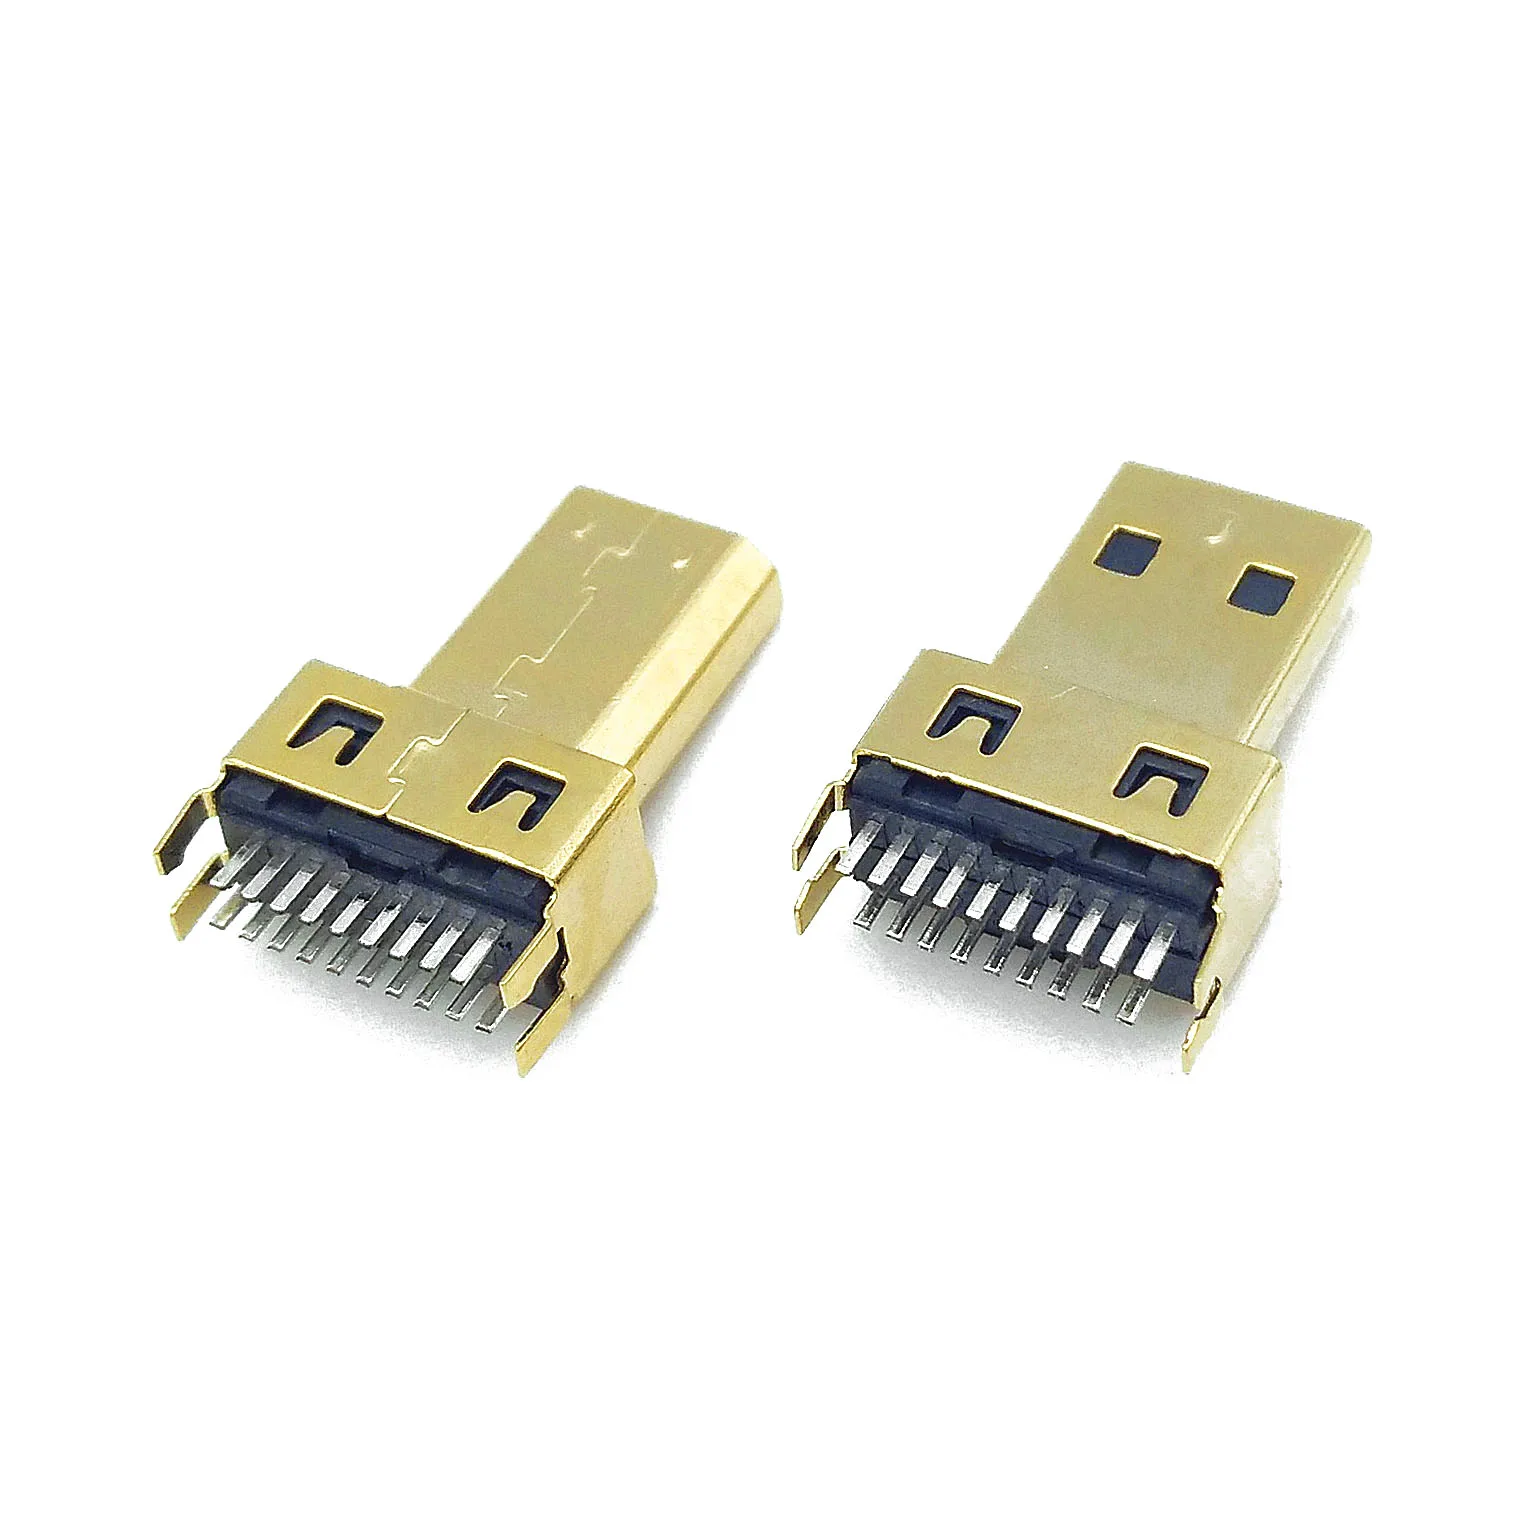 20 buah konektor Plug Jack pria HDMI mikro tipe-d 19PIN 19P belat berlapis emas